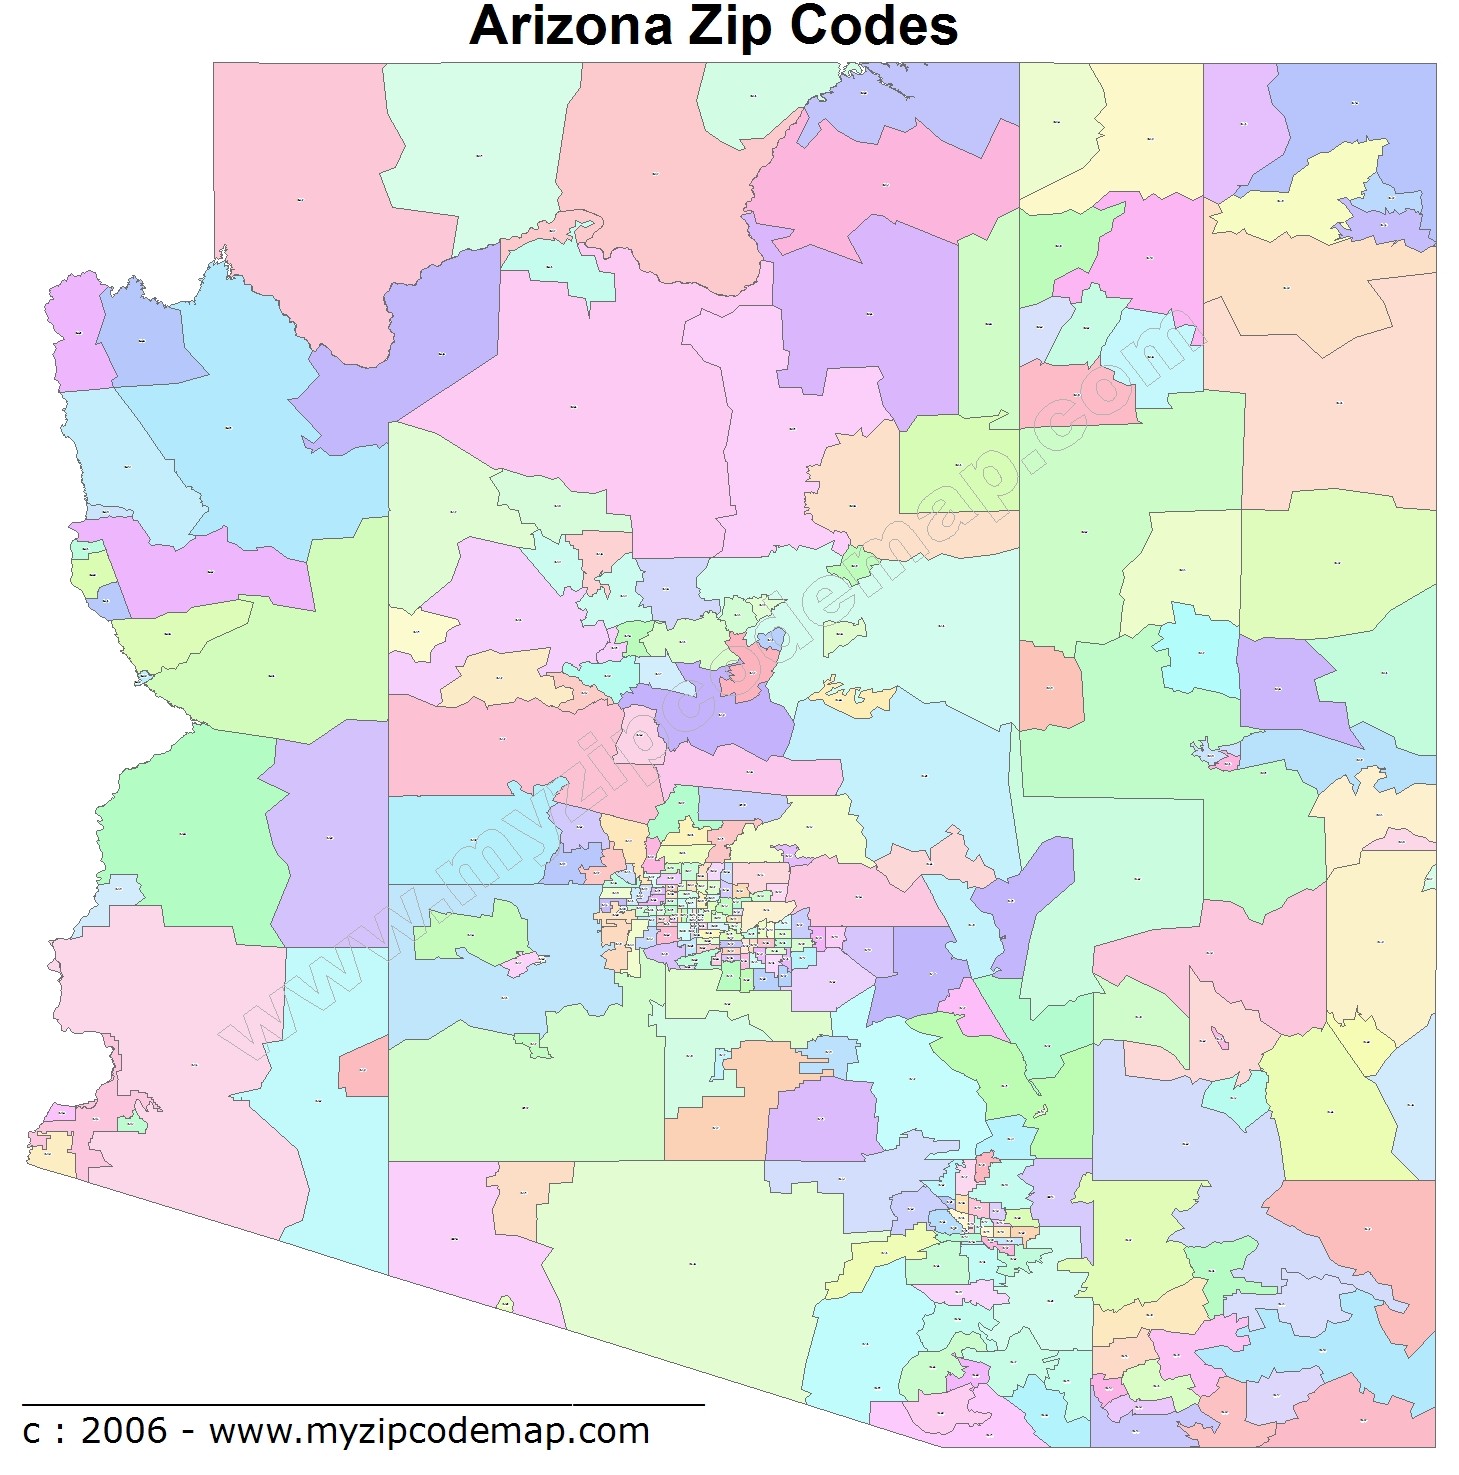 Arizona Zip Code Maps - Free Arizona Zip Code Maps